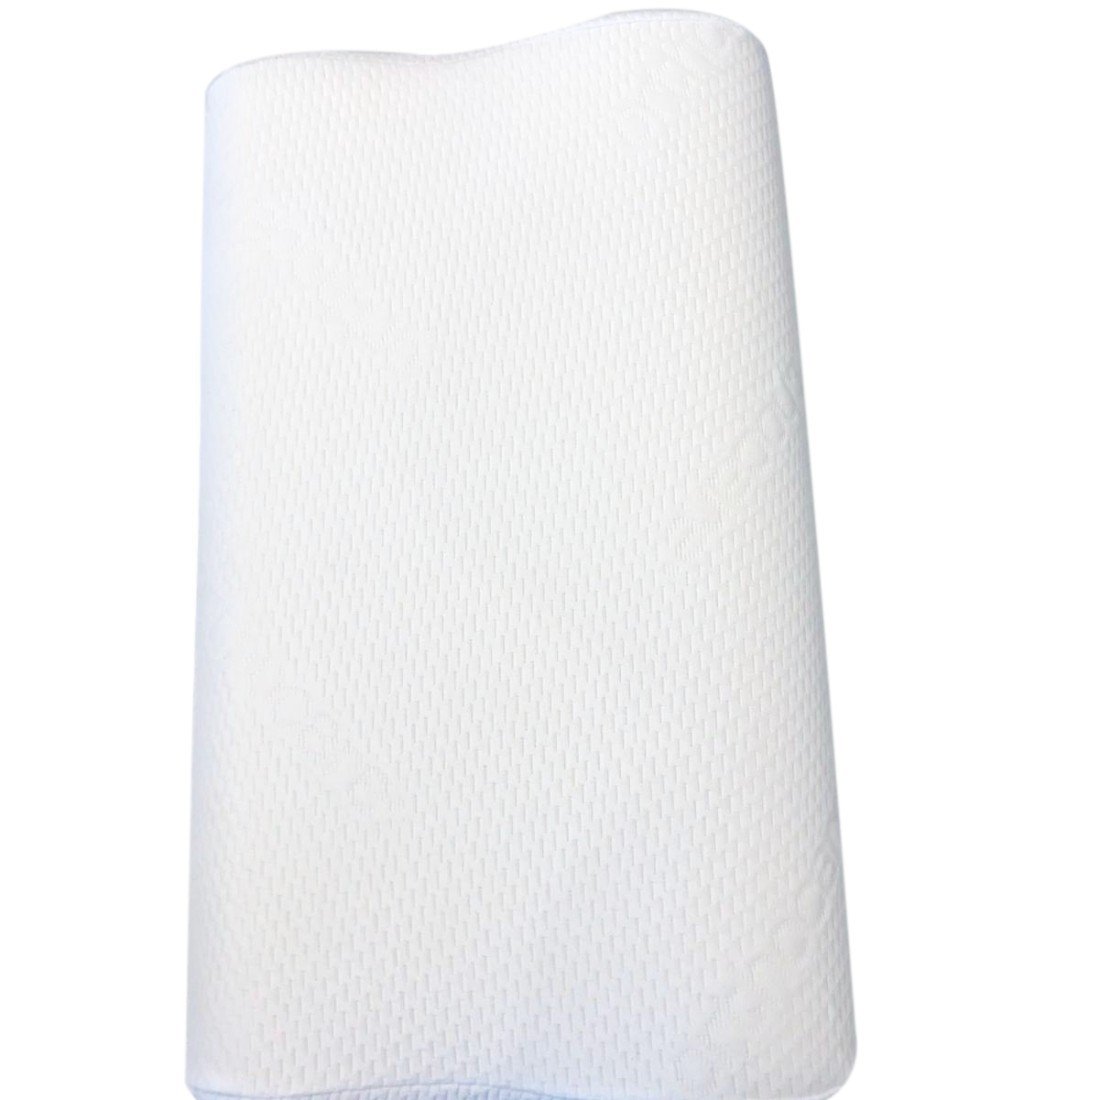 Orthocare Memory Foam Pillow Boyun Yastığı 1911